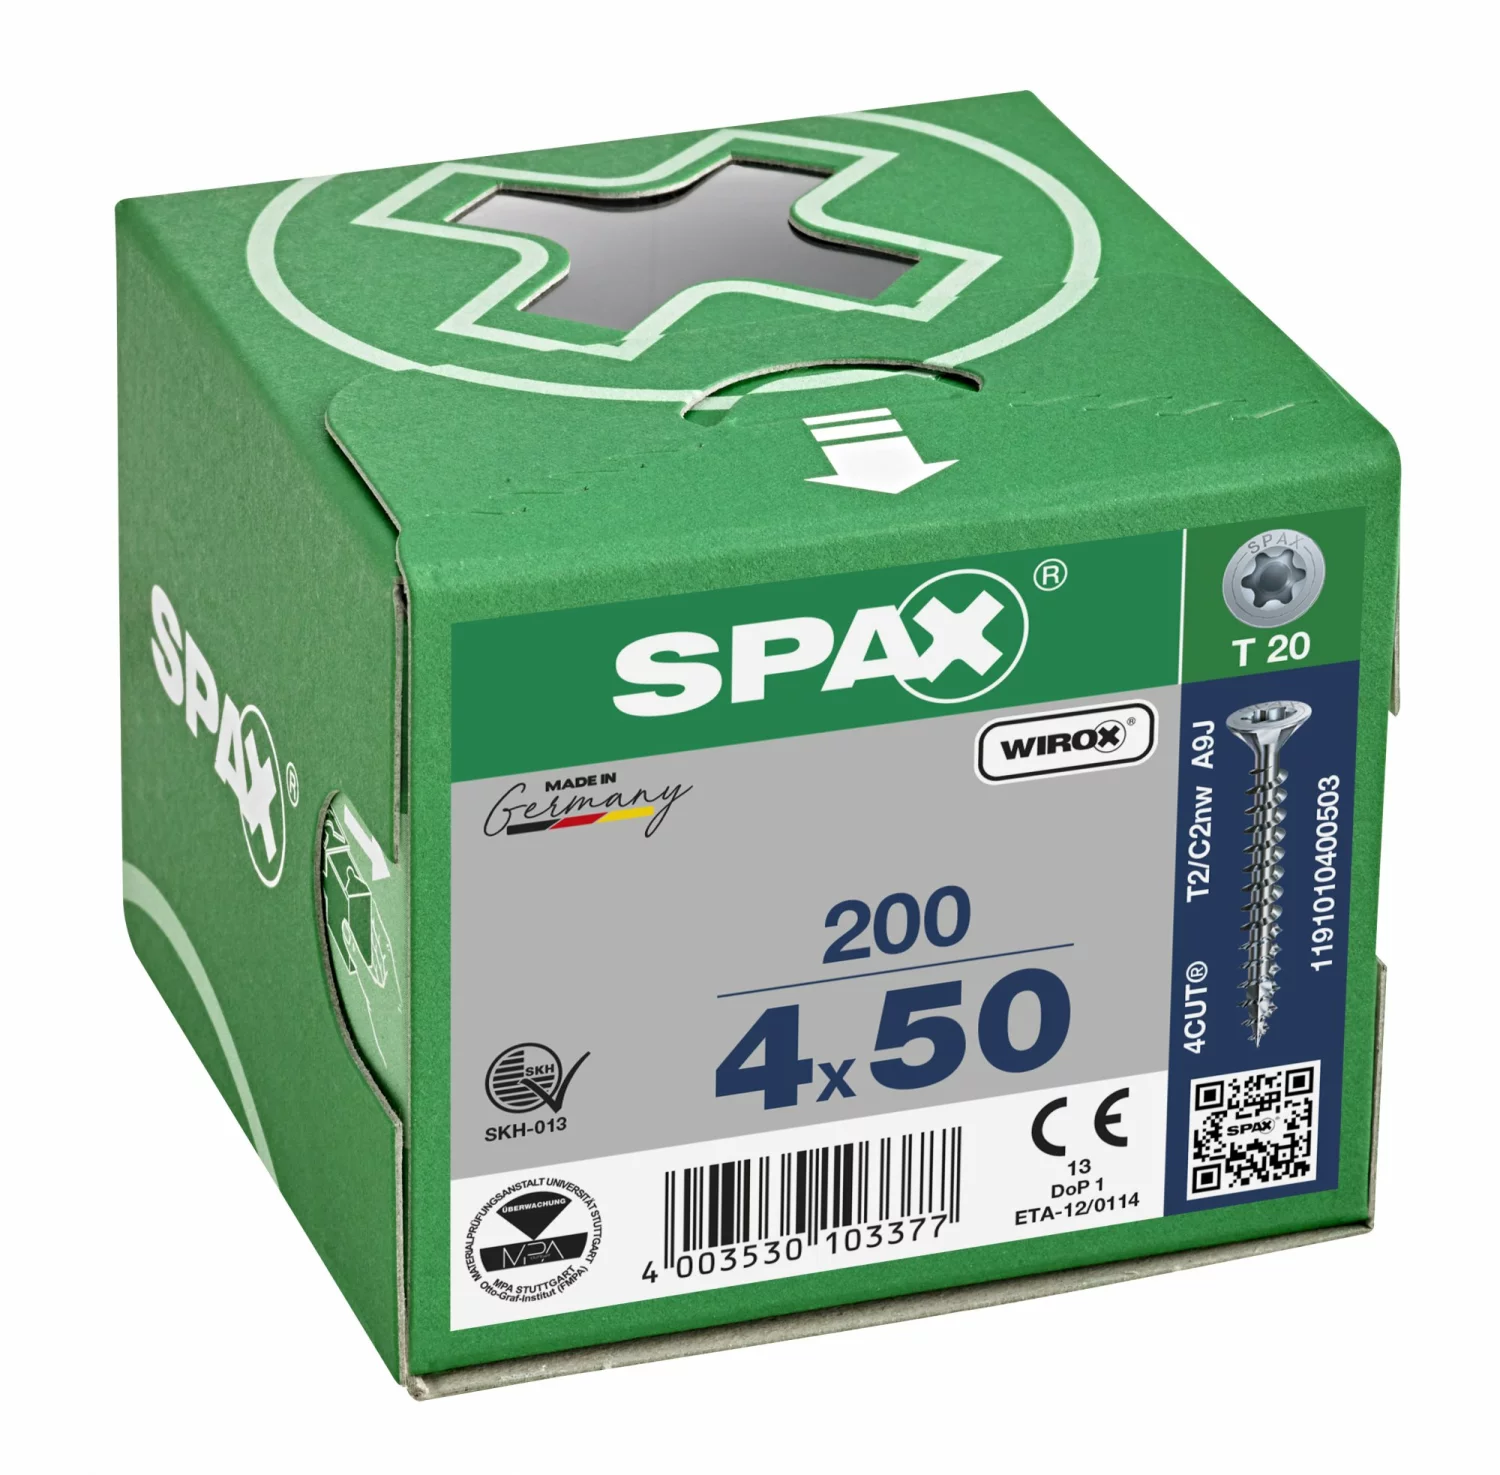 SPAX 1191010400503 Universele schroef, Verzonken kop, 4 x 50, Voldraad, T-STAR plus TX20 - WIROX - 200 stuks